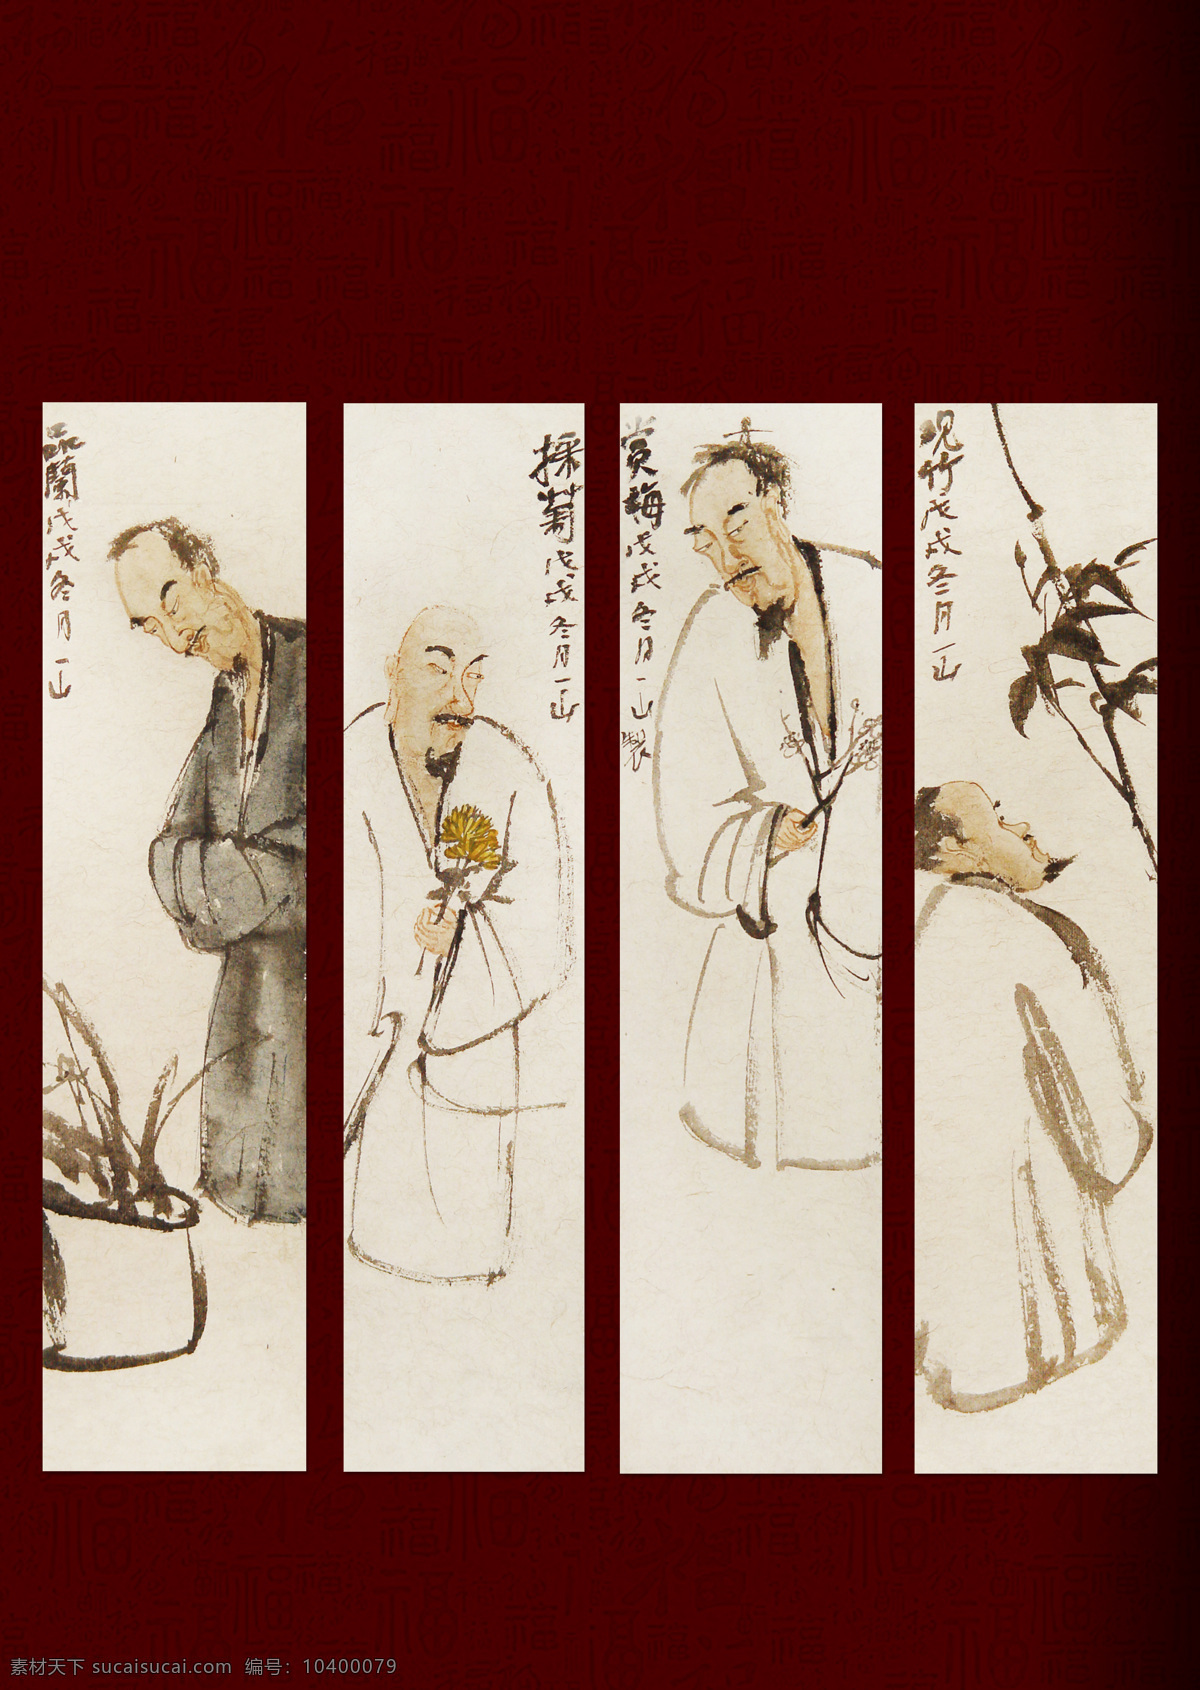 一山中国画 过年的味道 人物 国画 植物 写意 过年 人物图库 男性男人